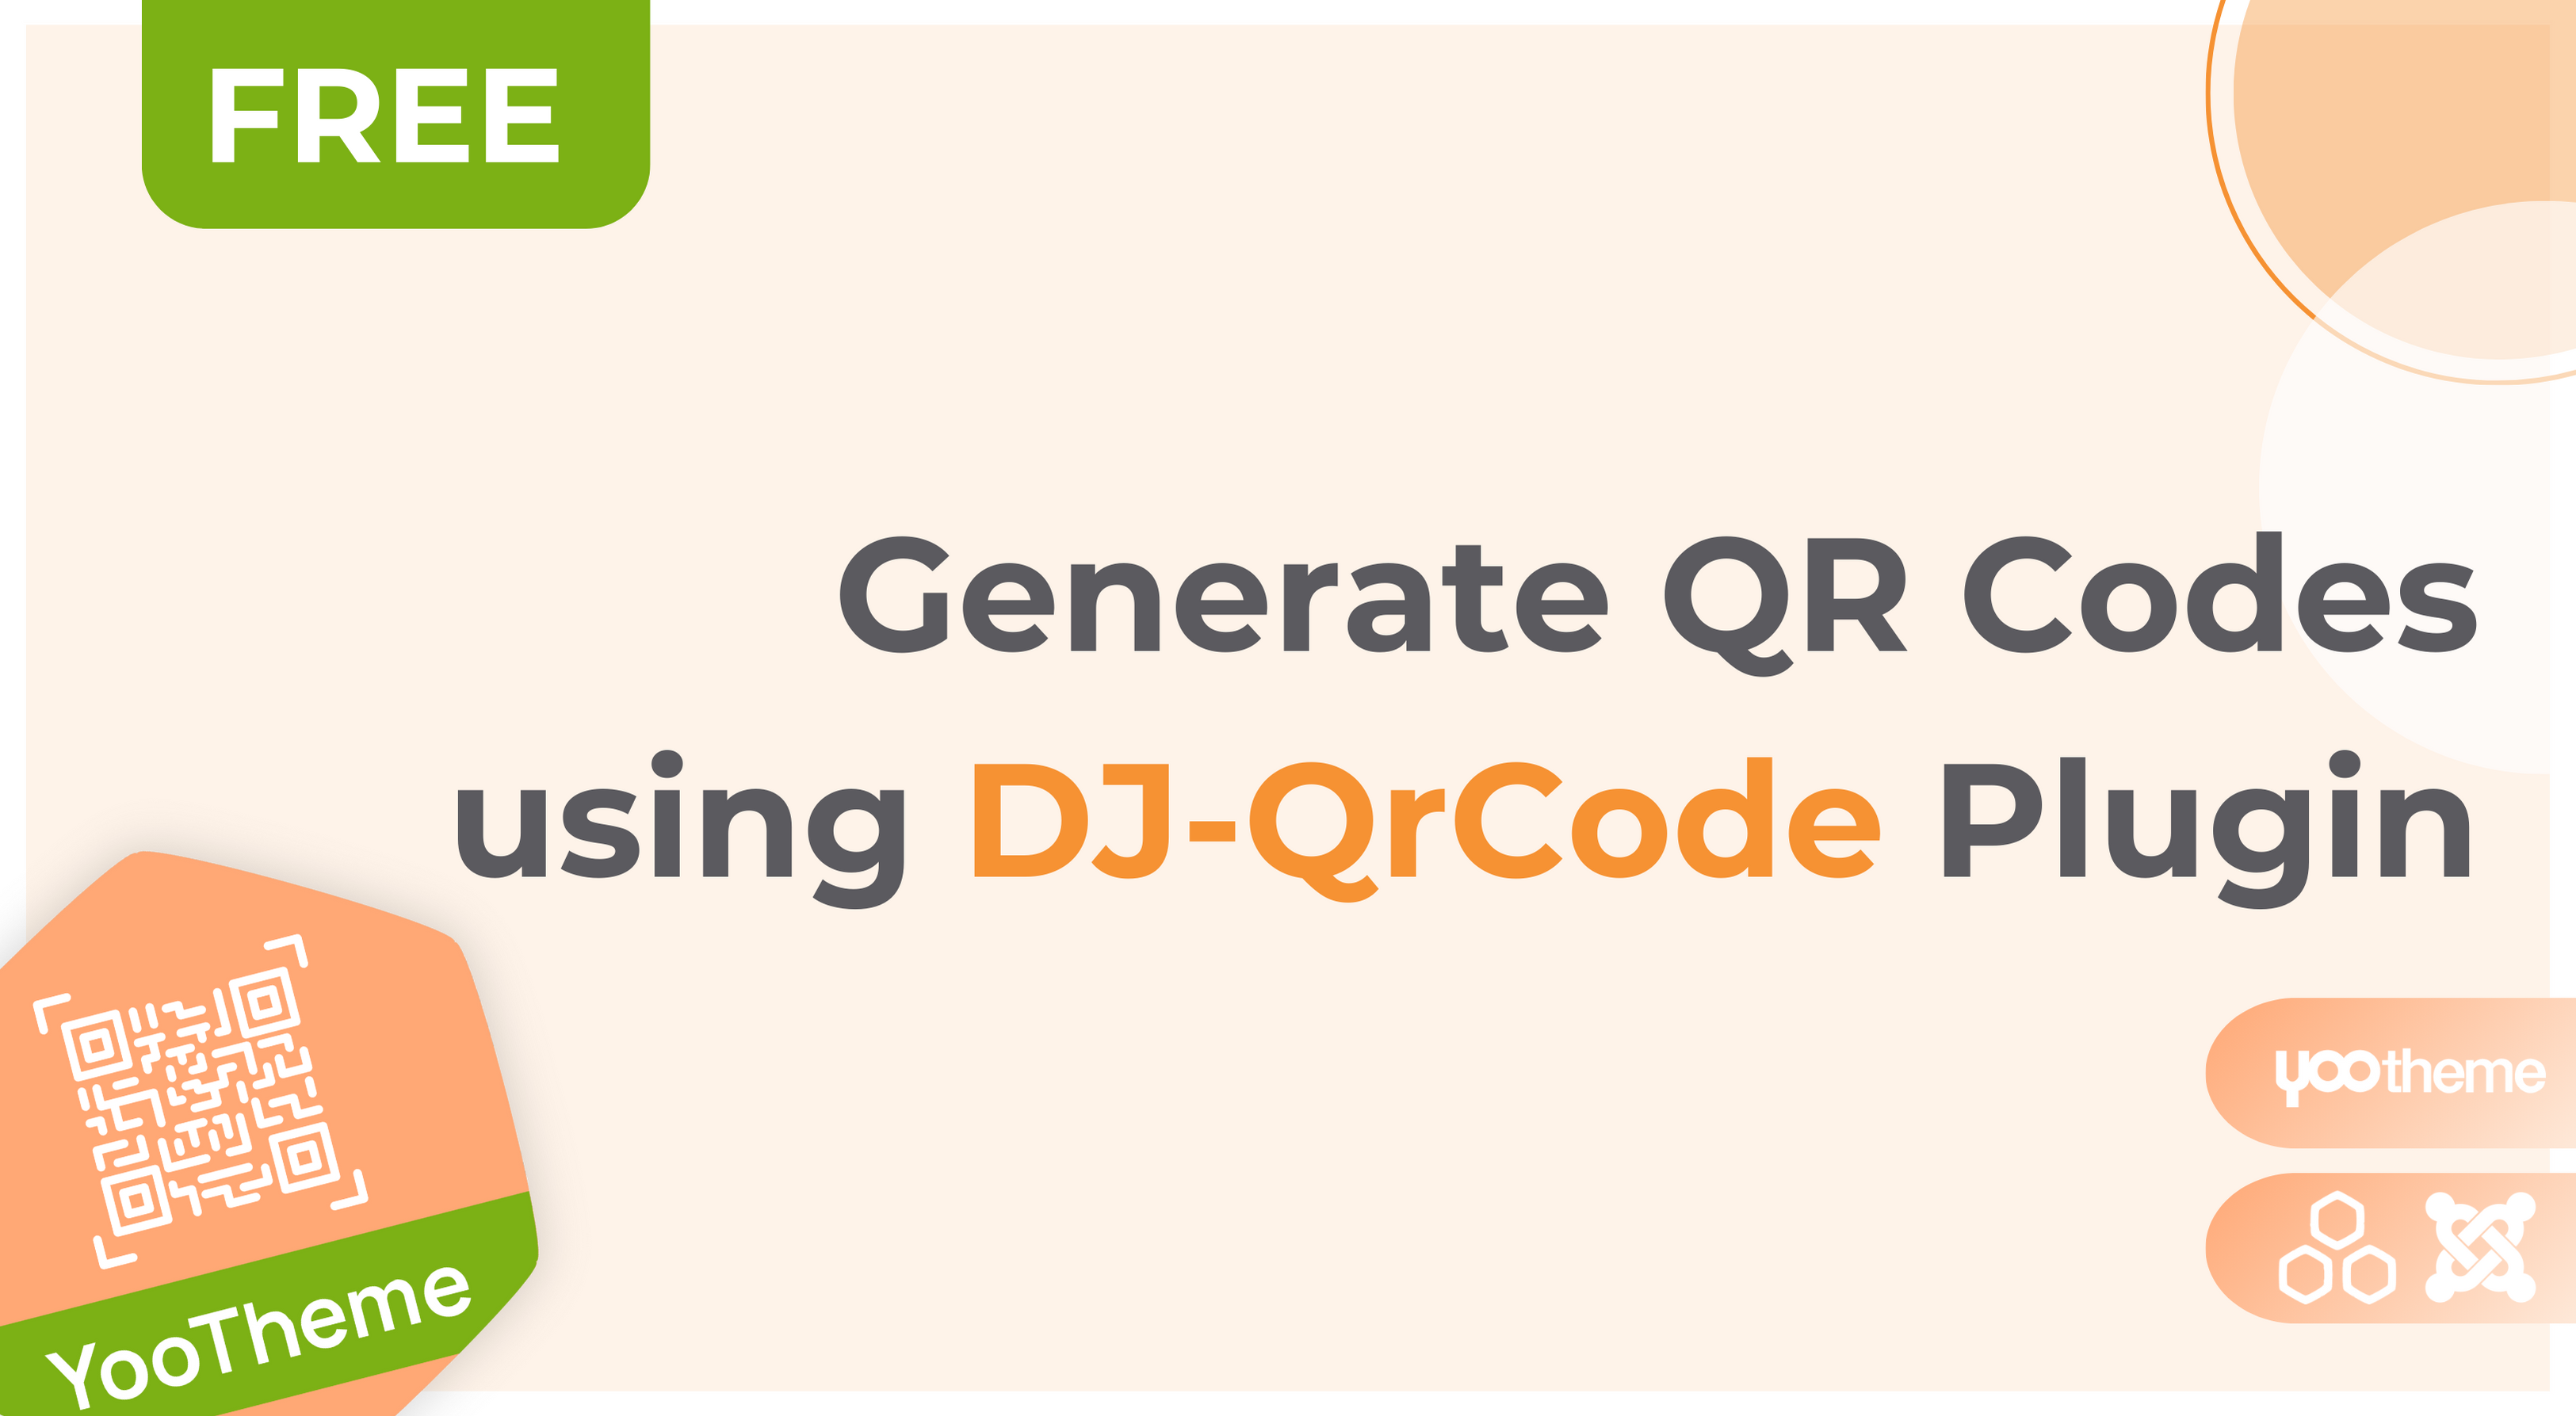 Introducing DJ-QrCode plugin